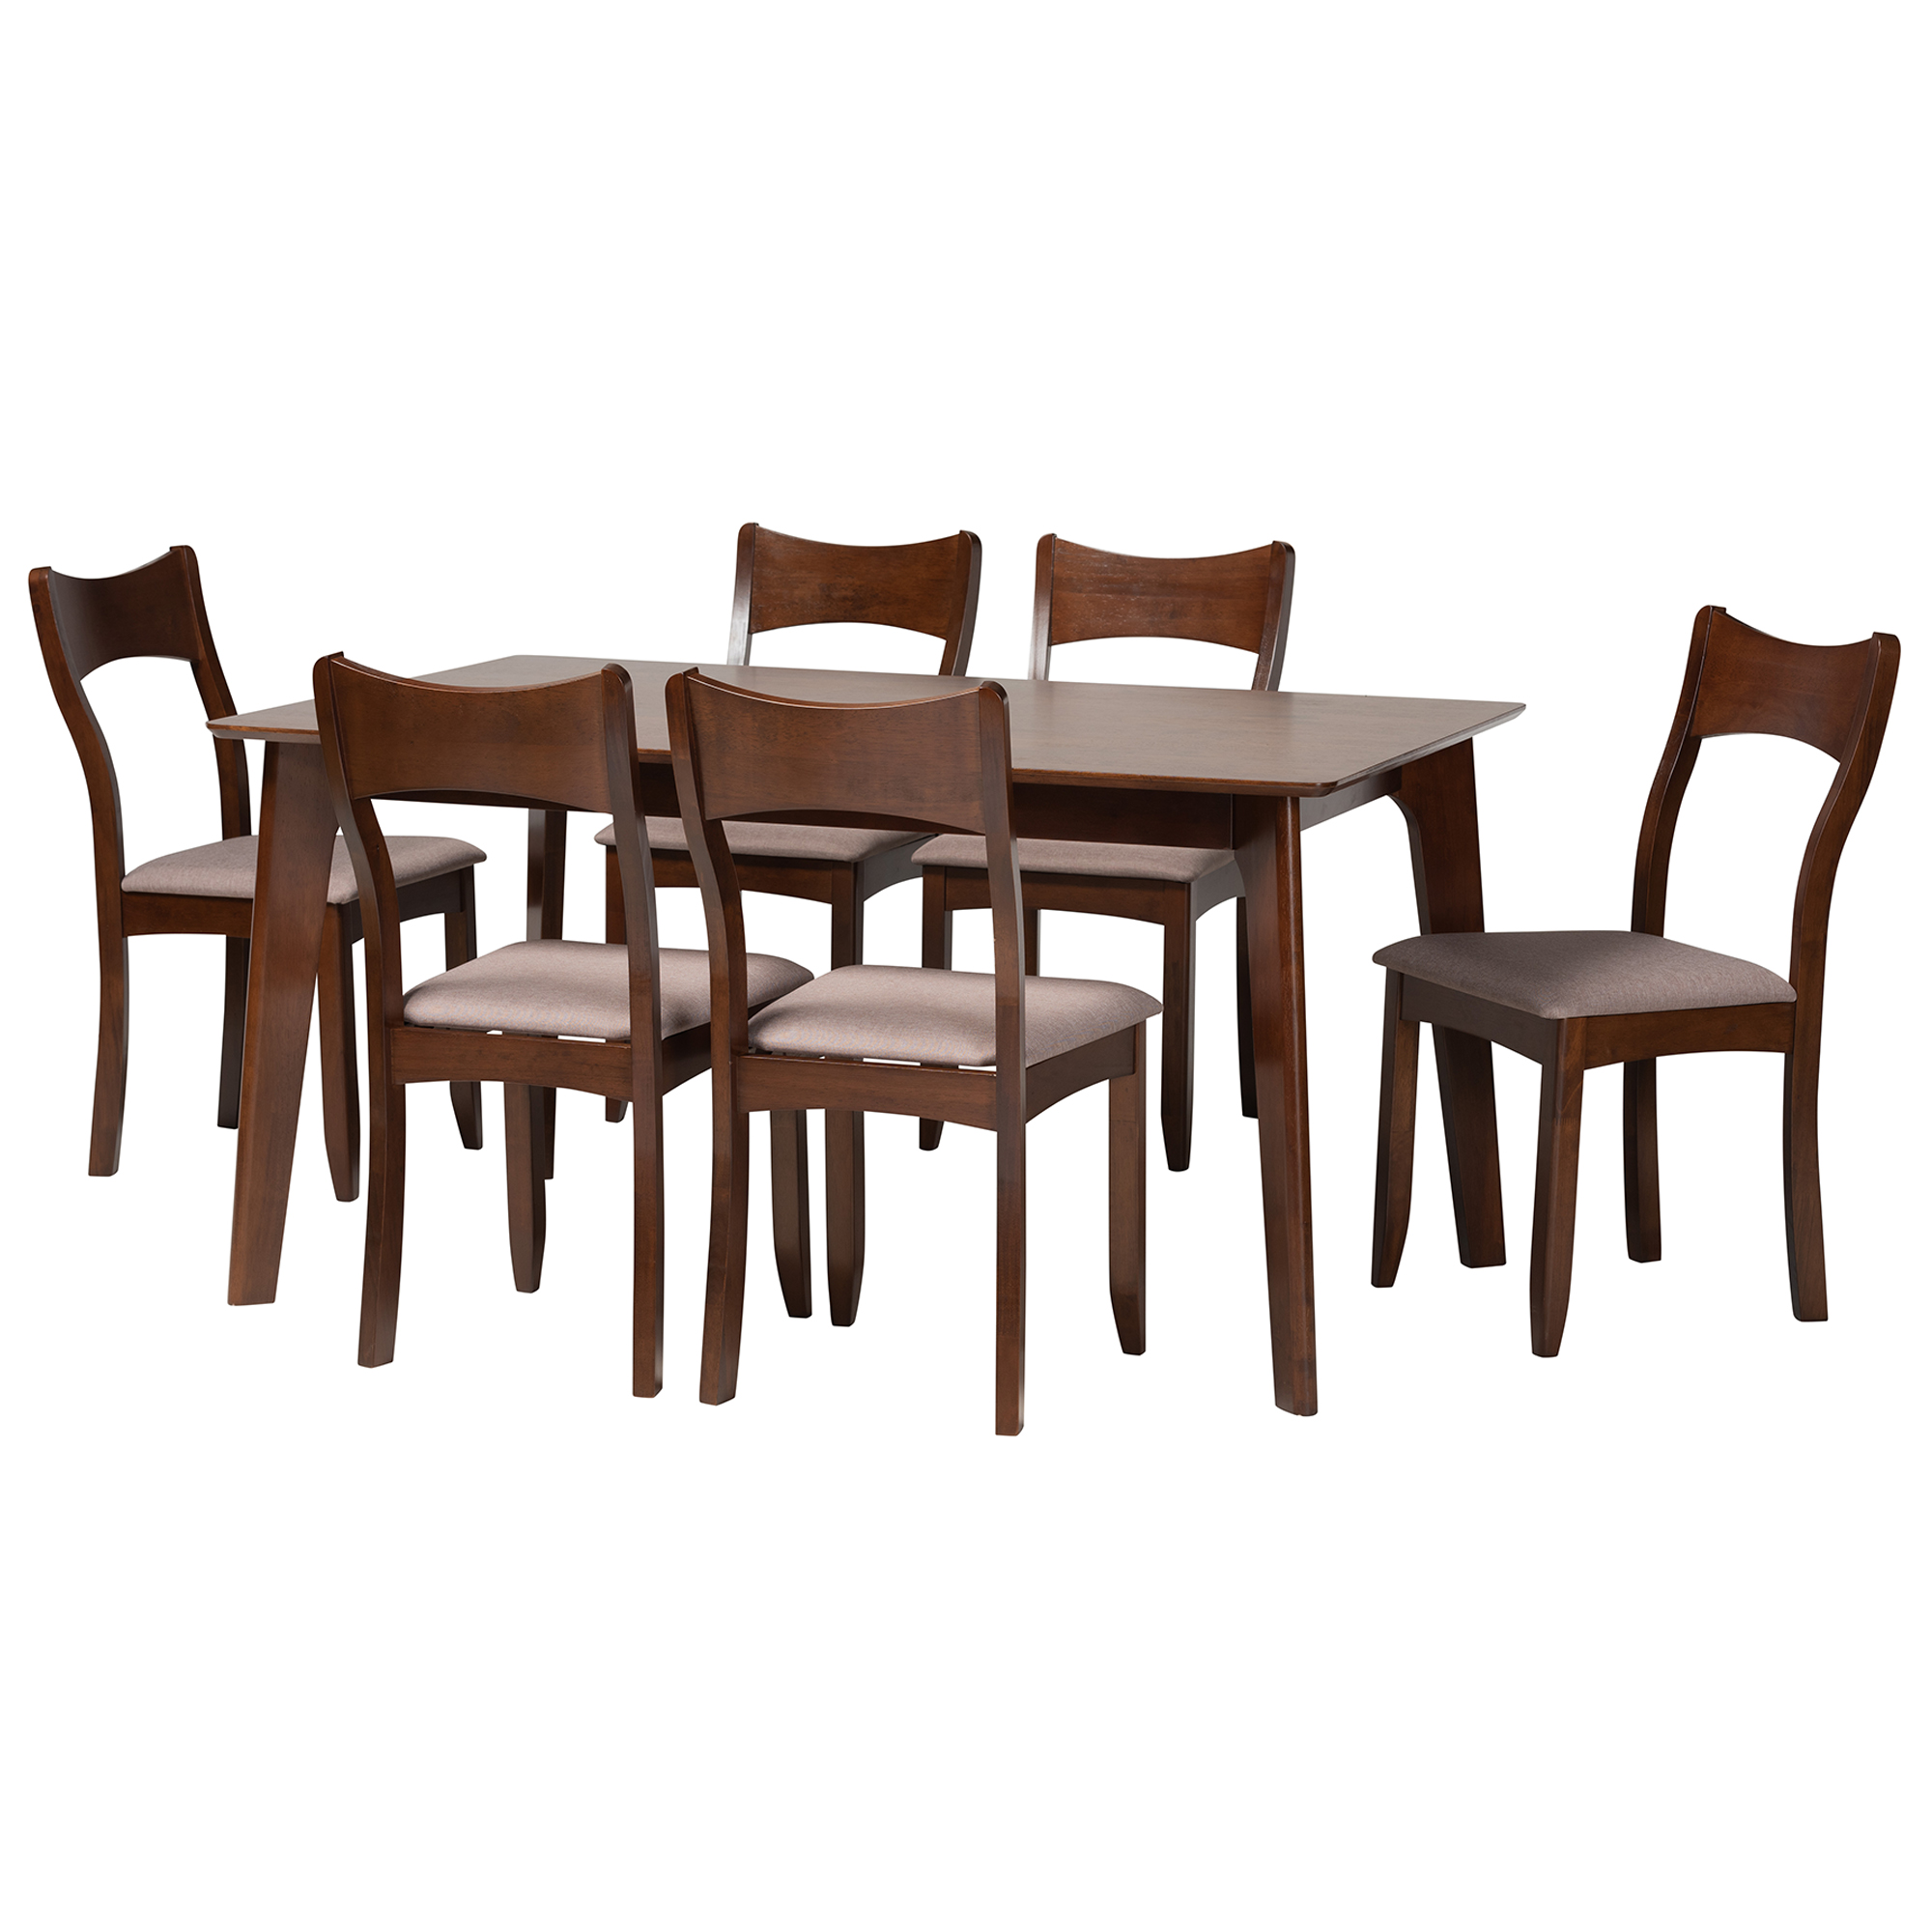 Dining Sets | Dining Room Furniture | Affordable Modern Furniture ...